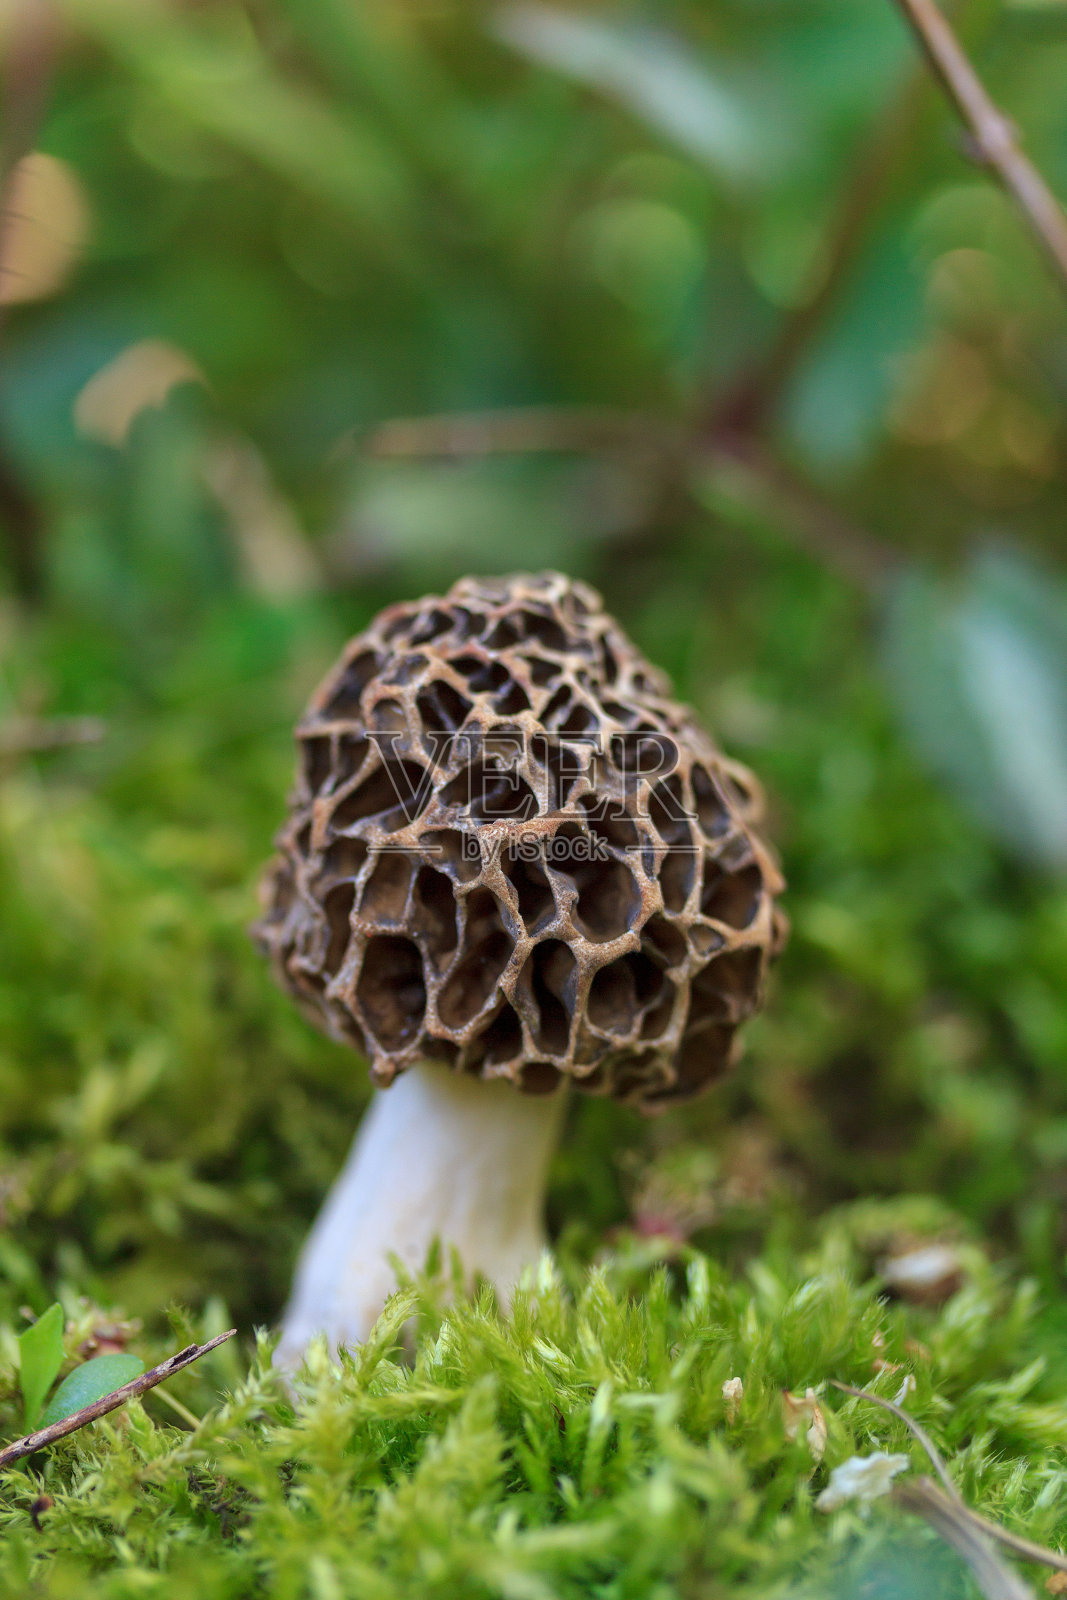 这是一张藏在春天森林草丛中的奇异蘑菇的微距照片照片摄影图片